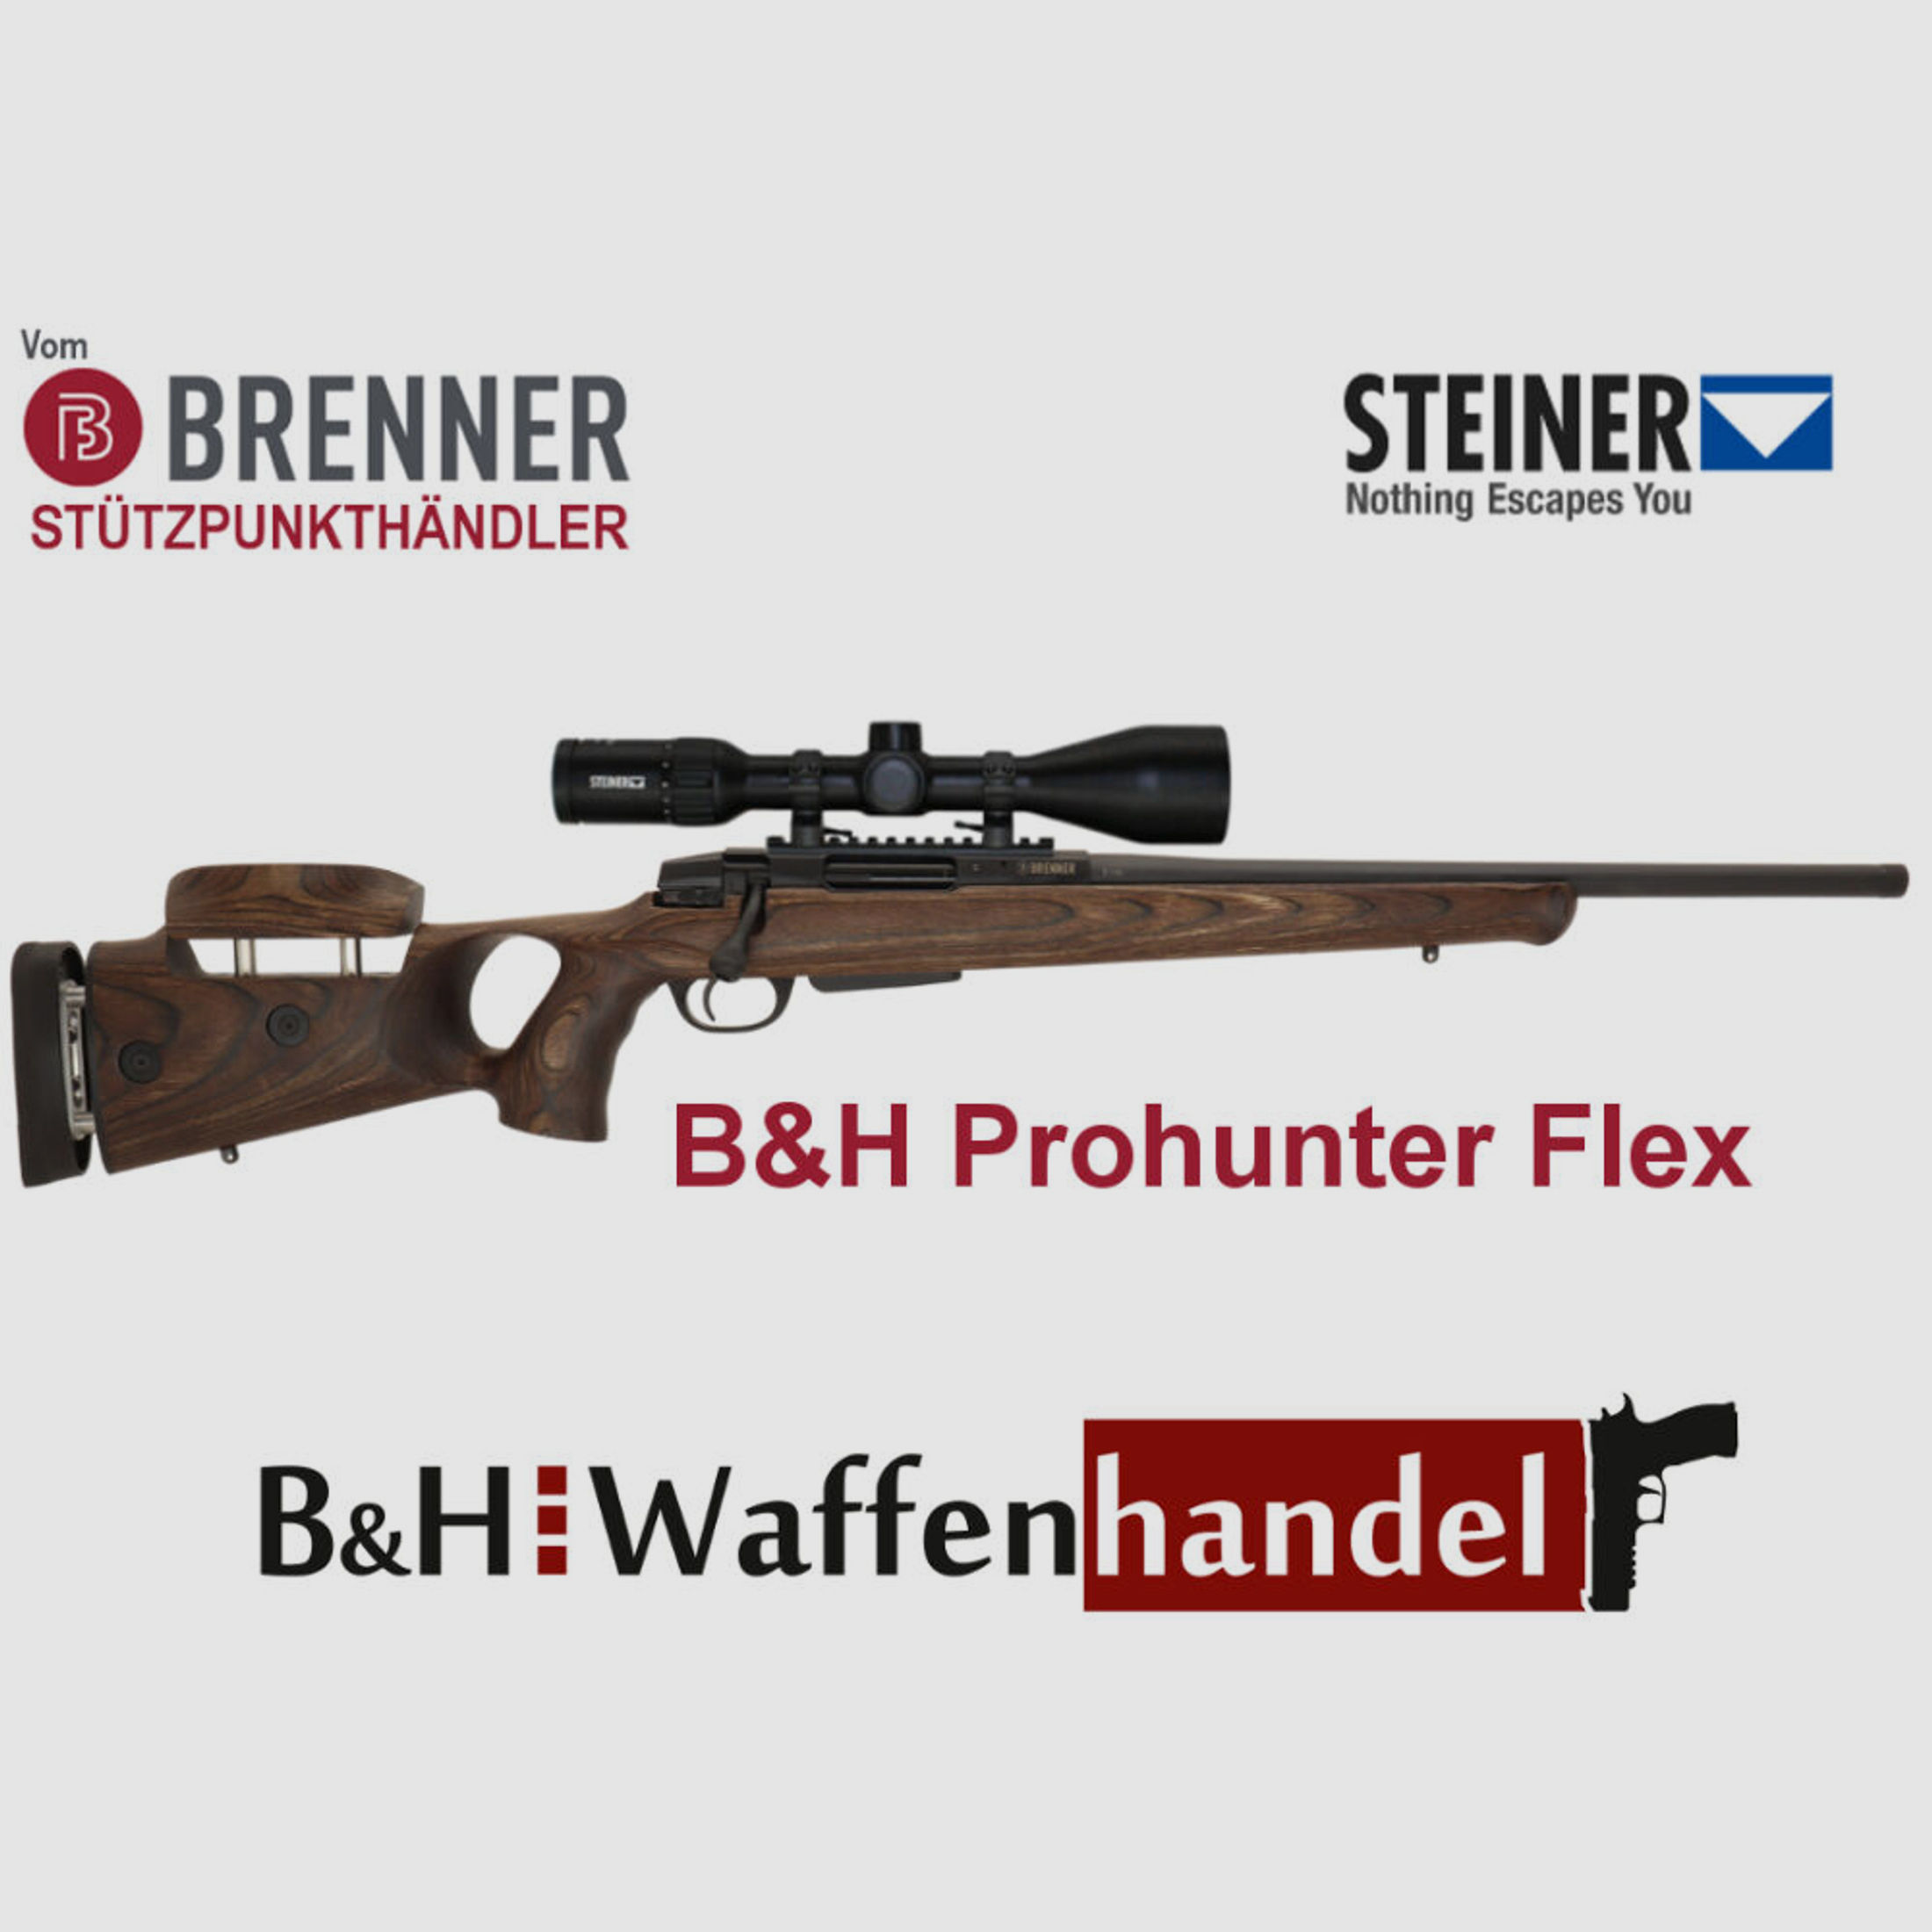 Brenner Komplettpaket:	 BR20 B&H Prohunter Flex Lochschaft mit doppelter Verstellung inkl. Steiner 3-12x56 fertig montiert Jagdbüchse